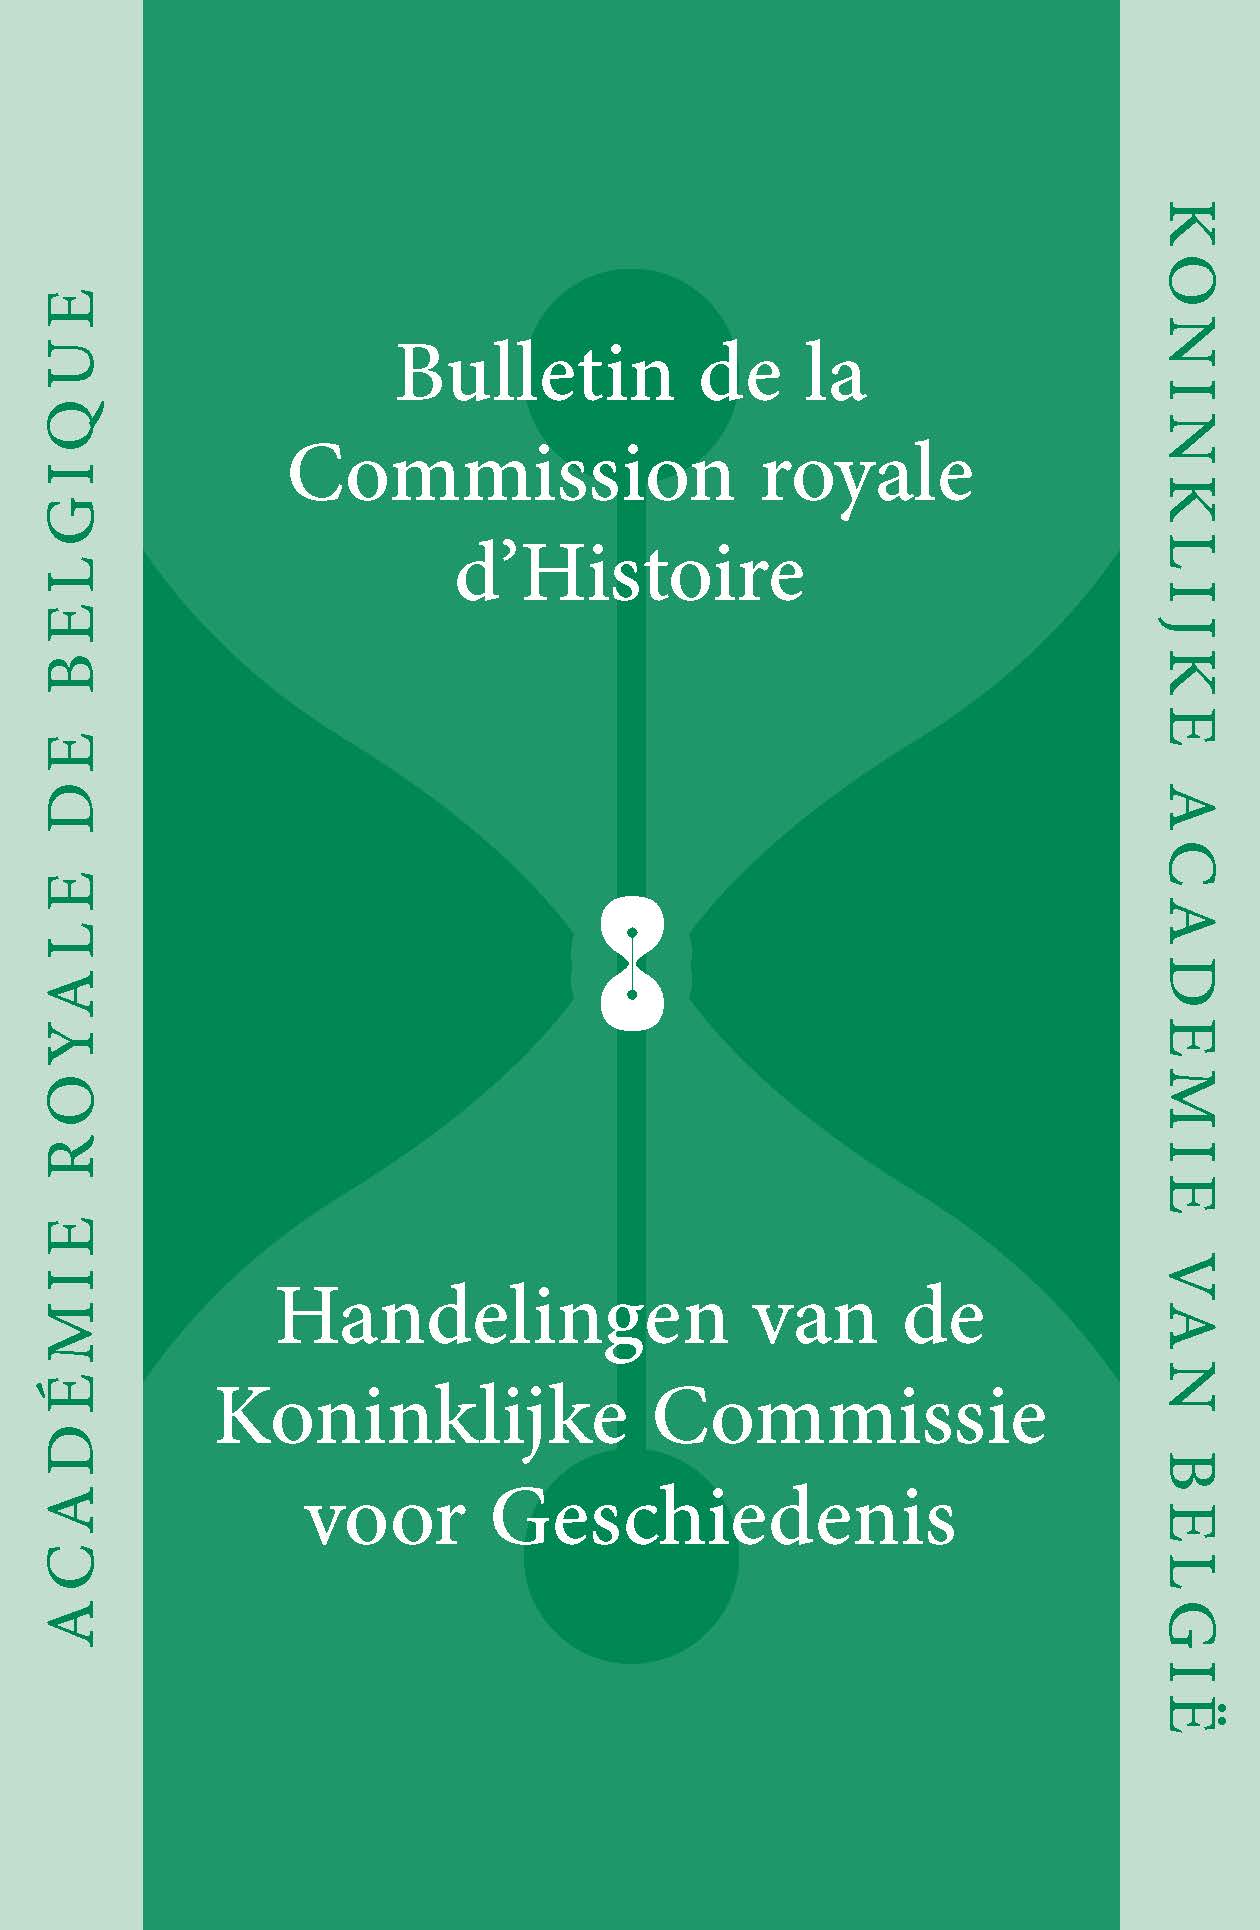 HANDELINGEN VAN DE KONINKLIJKE COMMISSIE VOOR GESCHIEDENIS/BULLETIN, vol. 180, 2014